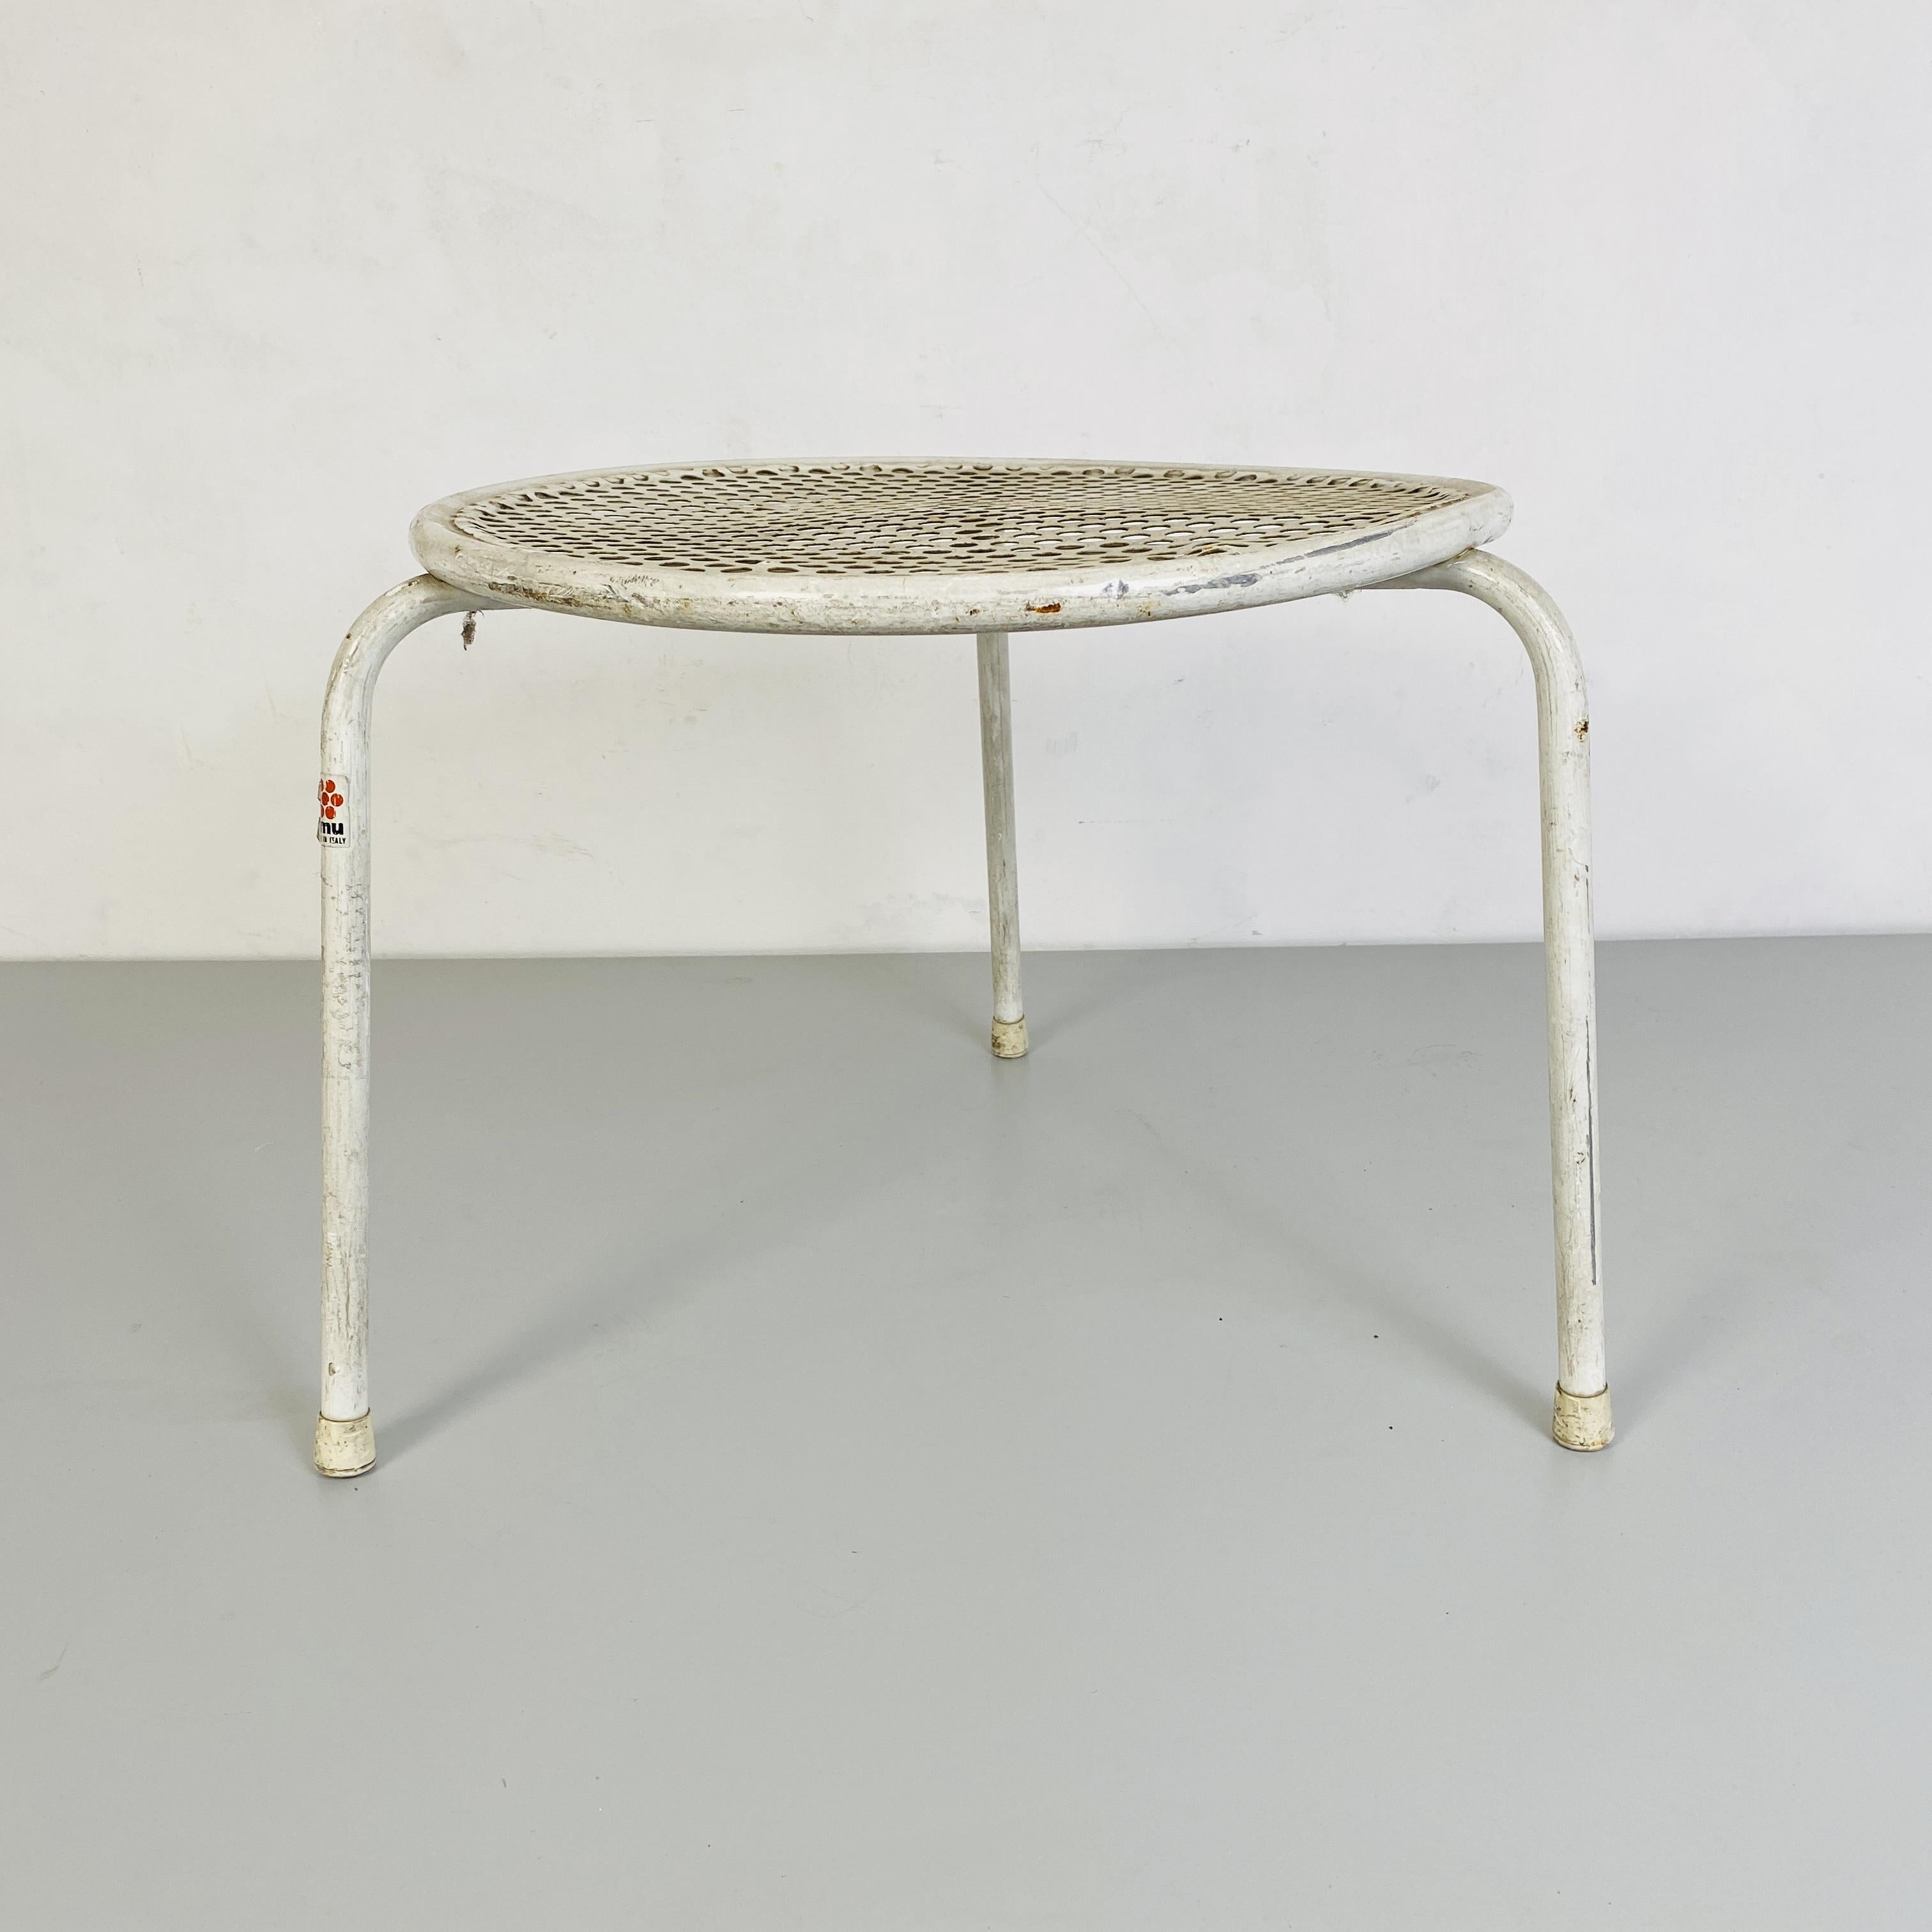 Table d'extérieur en métal perforé, Emu, années 1960
Table d'extérieur en métal perforé peint en blanc. Fabriqué dans les années 1960 par Emu.

Etat moyen, en patine.

Mesures en cm 46x34h.